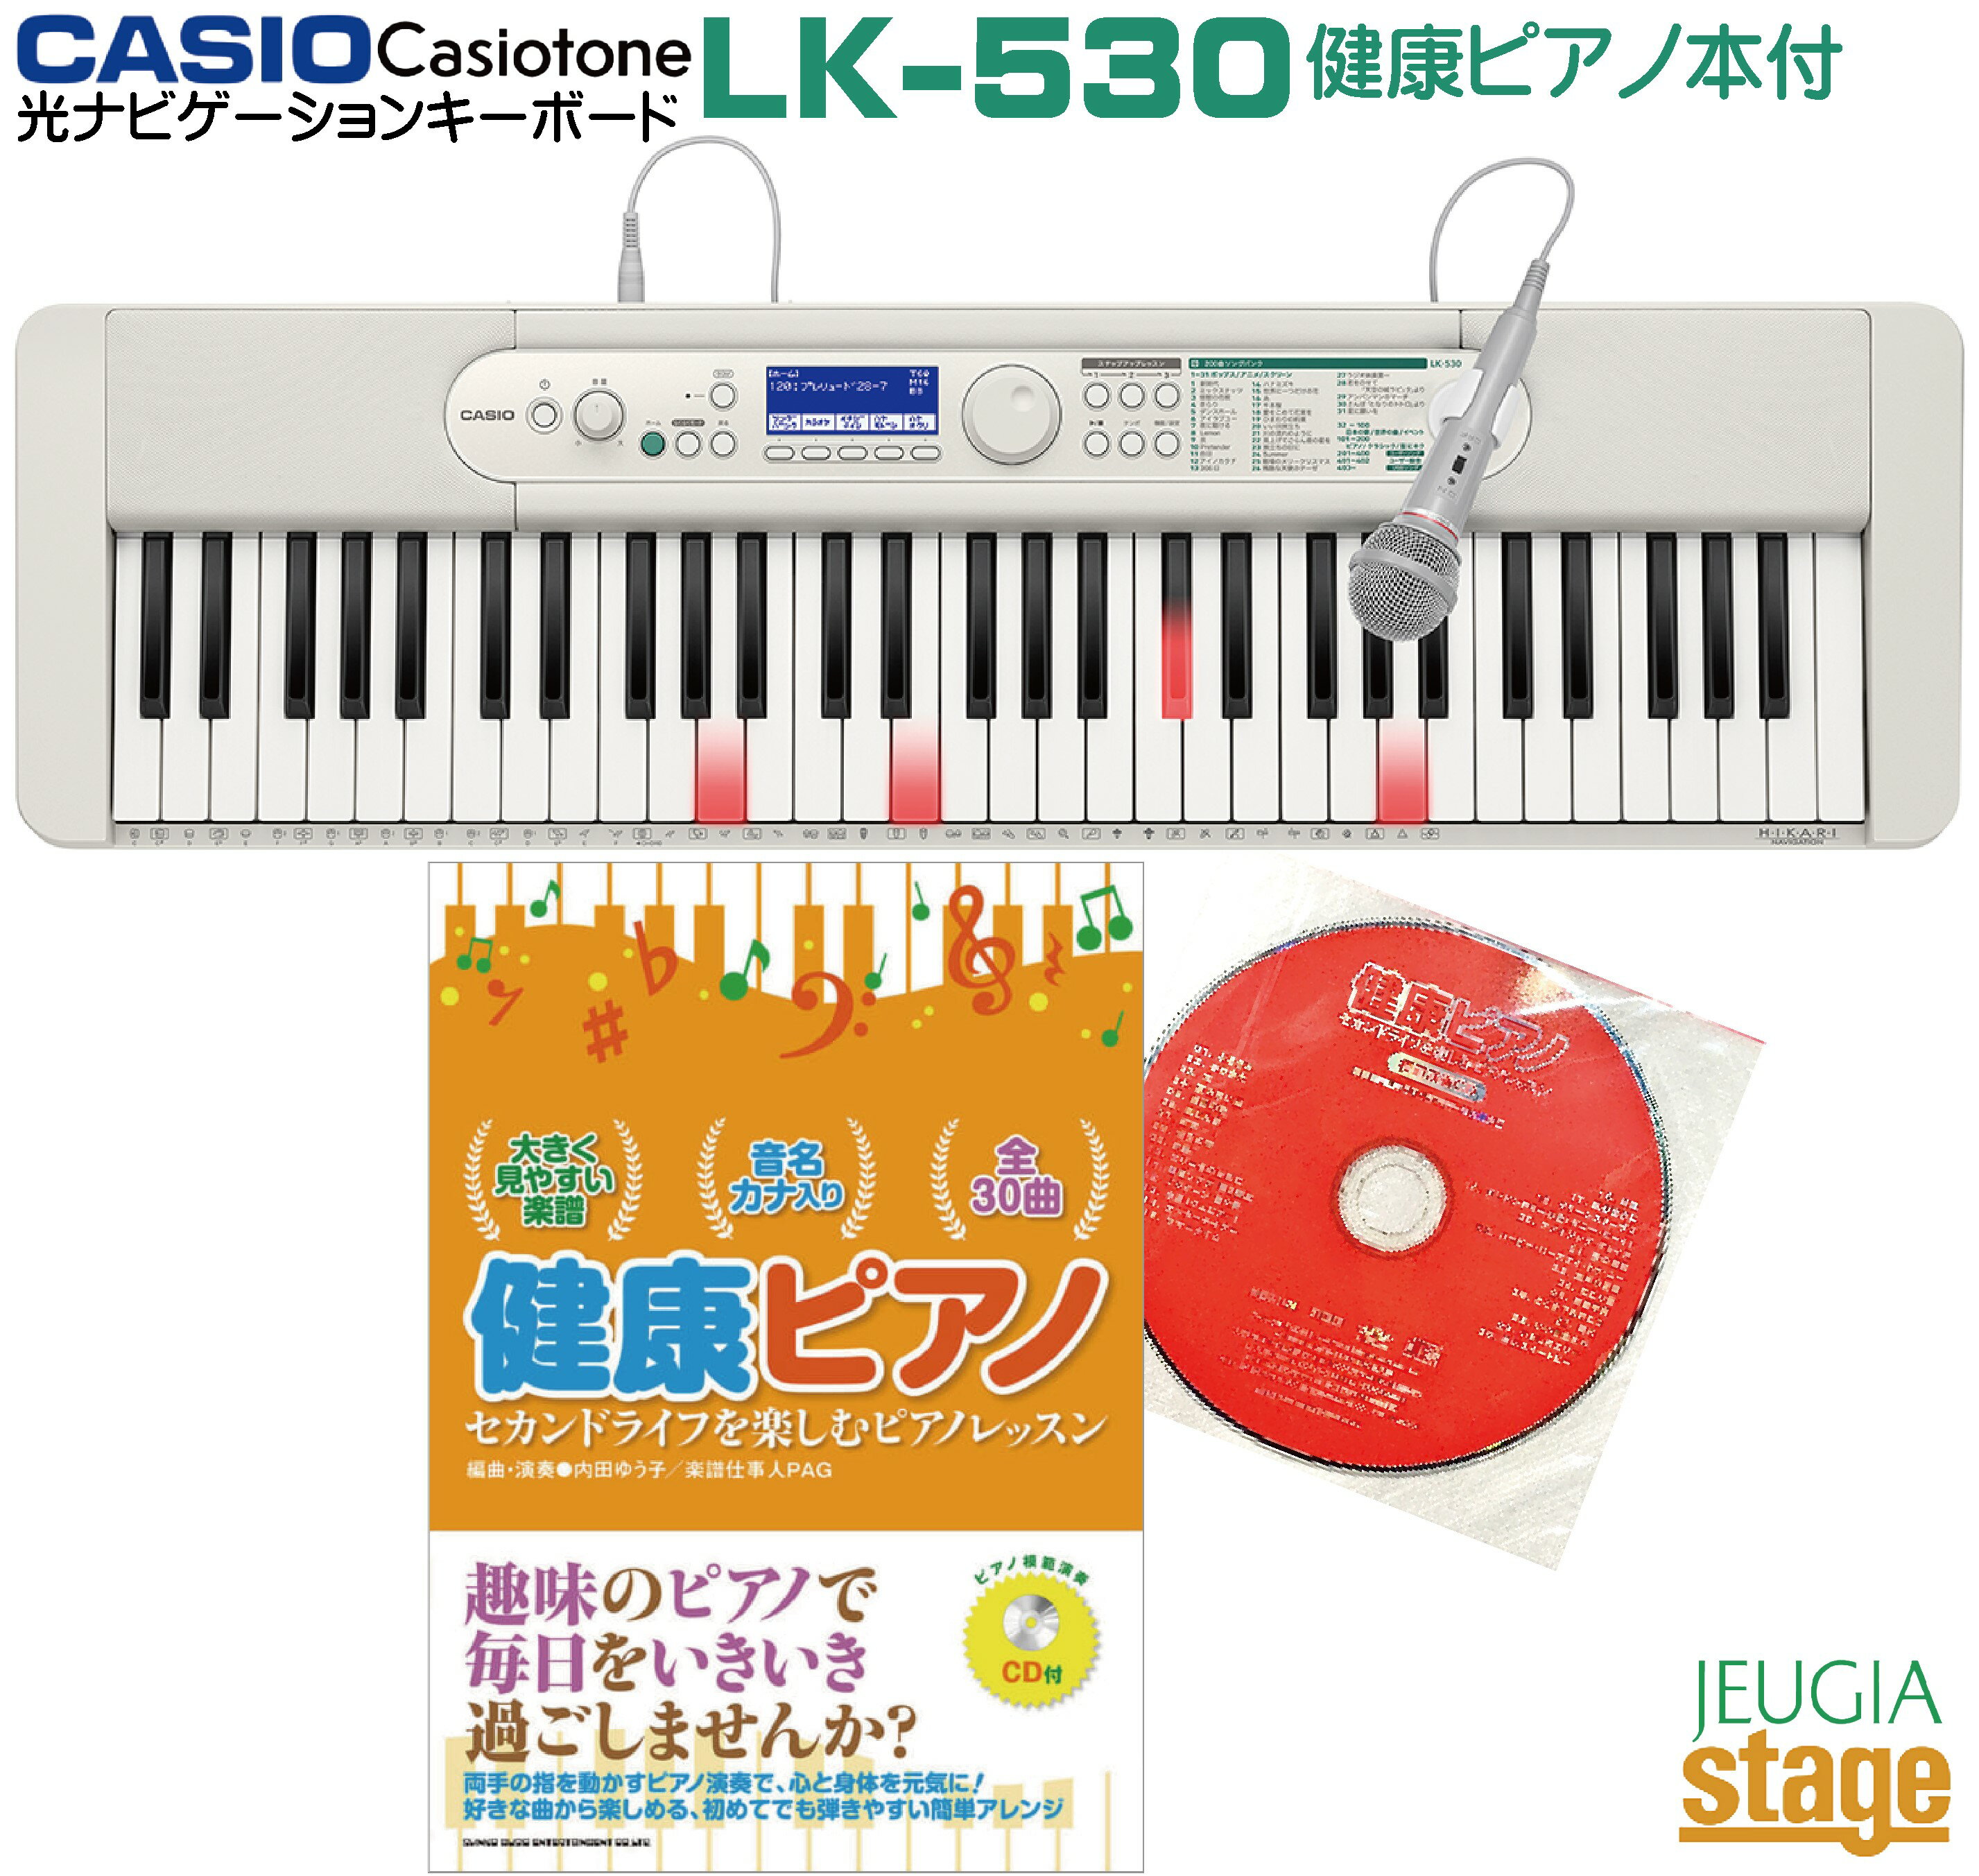 【新製品】CASIO LK-530 Casiotone【健康ピアノ本付き】カシオ 光ナビゲーション キーボード カシオトーン 61鍵【Stage-Rakuten Keyboard SET】LK-520後継機種